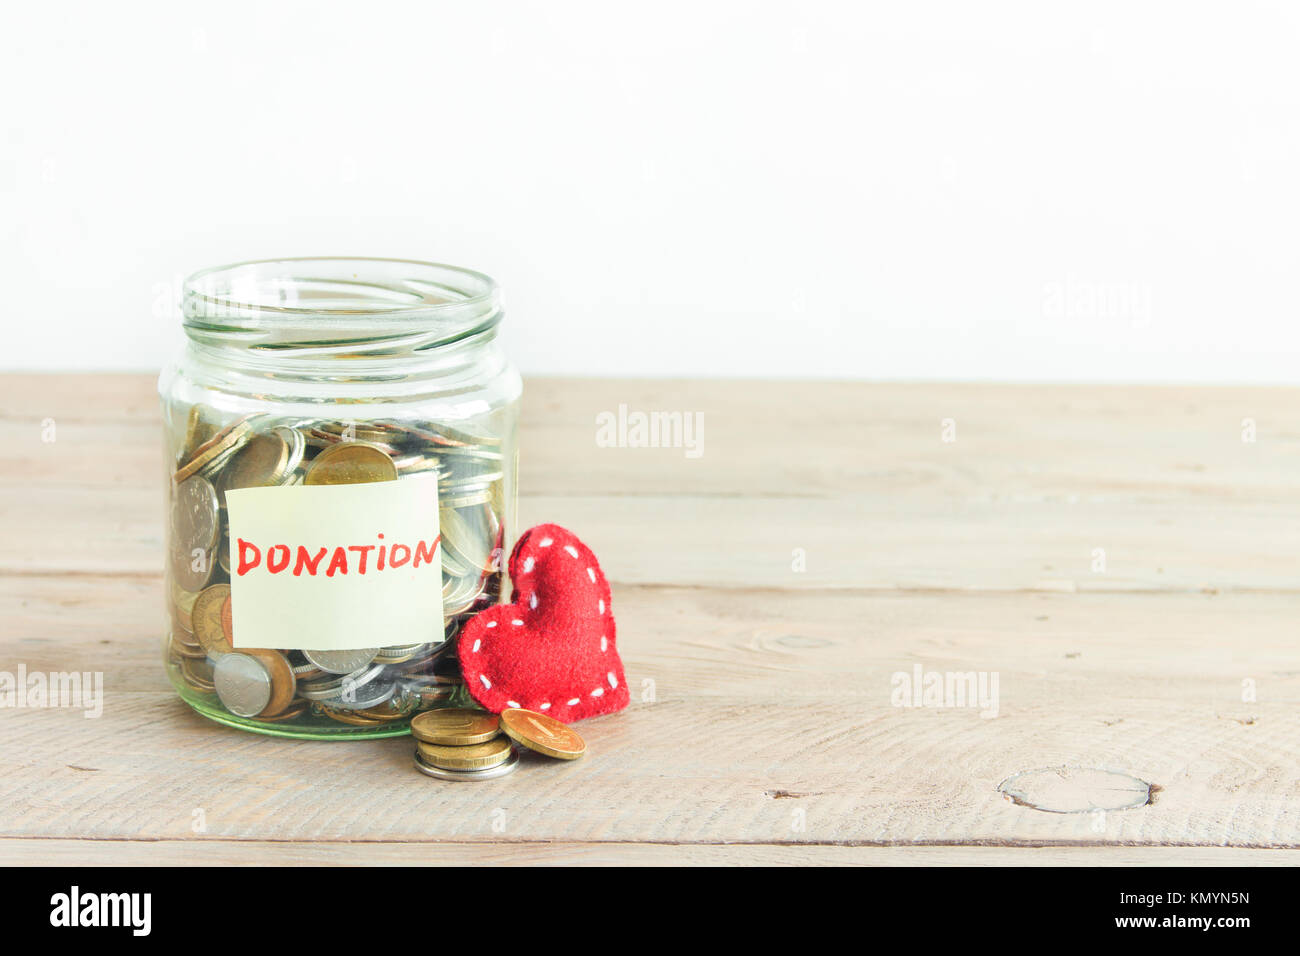 Münzen in Glas Glas mit Spende label und roten Herzen. Kosteneinsparungen, Nächstenliebe und Spendenkonzept, kopieren. Stockfoto